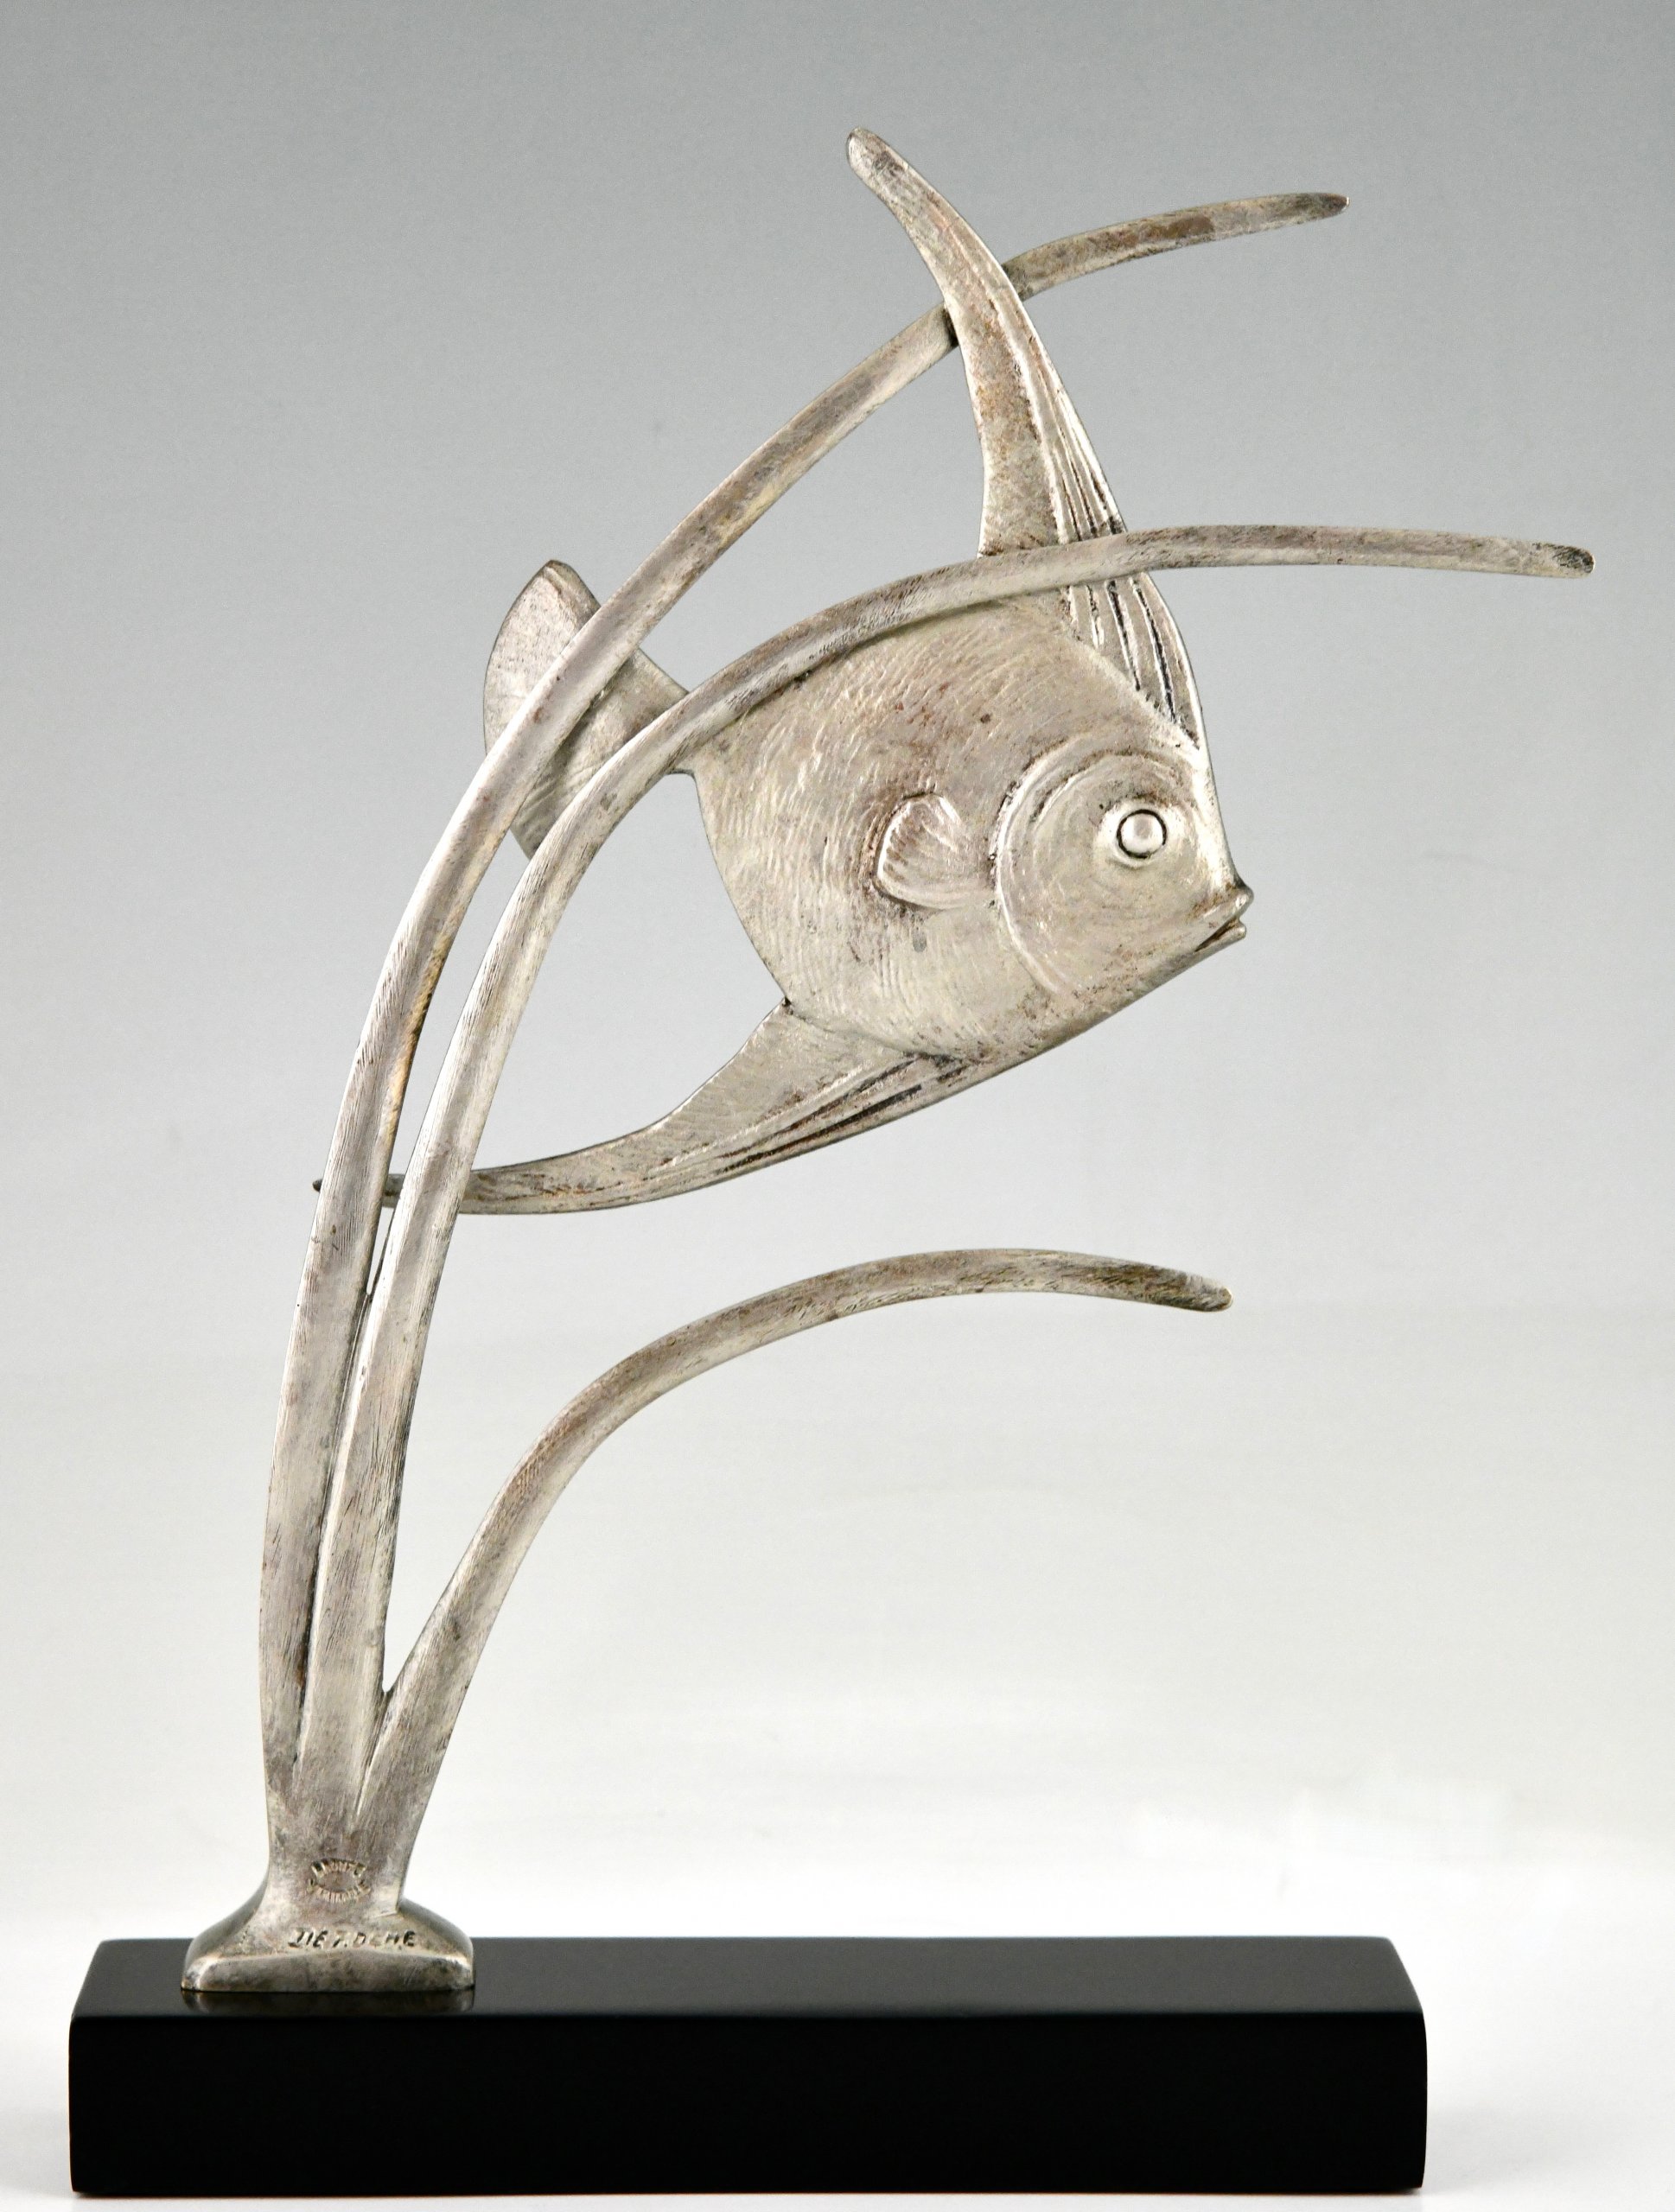 Art Deco bronzen sculptuur van een vis